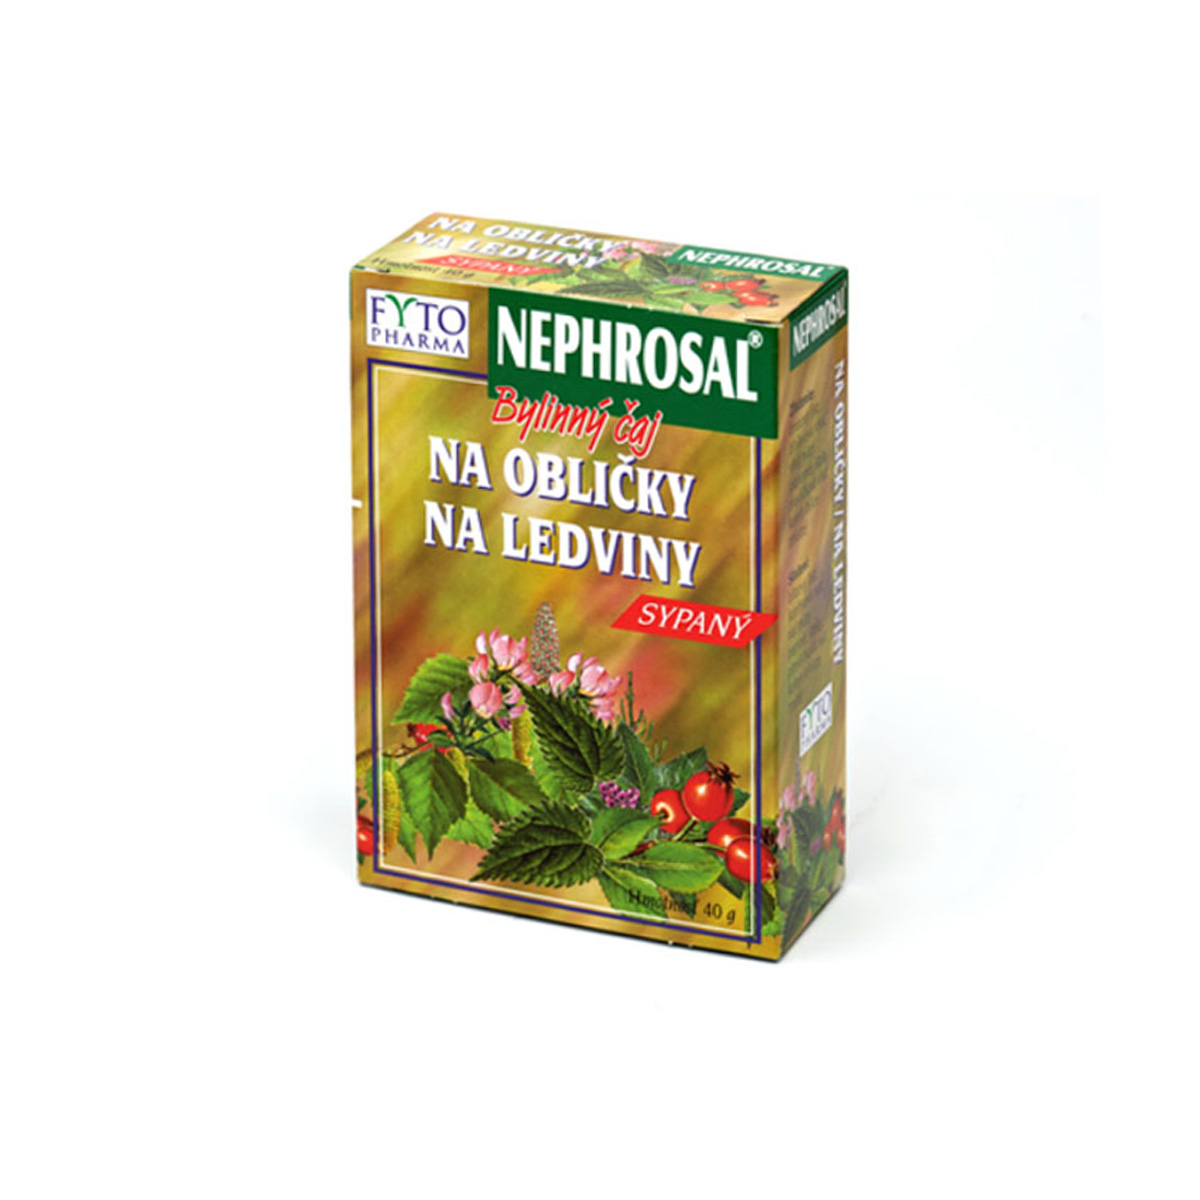 Fytopharma NEPHROSAL® bylinný čaj na ledviny 40 g